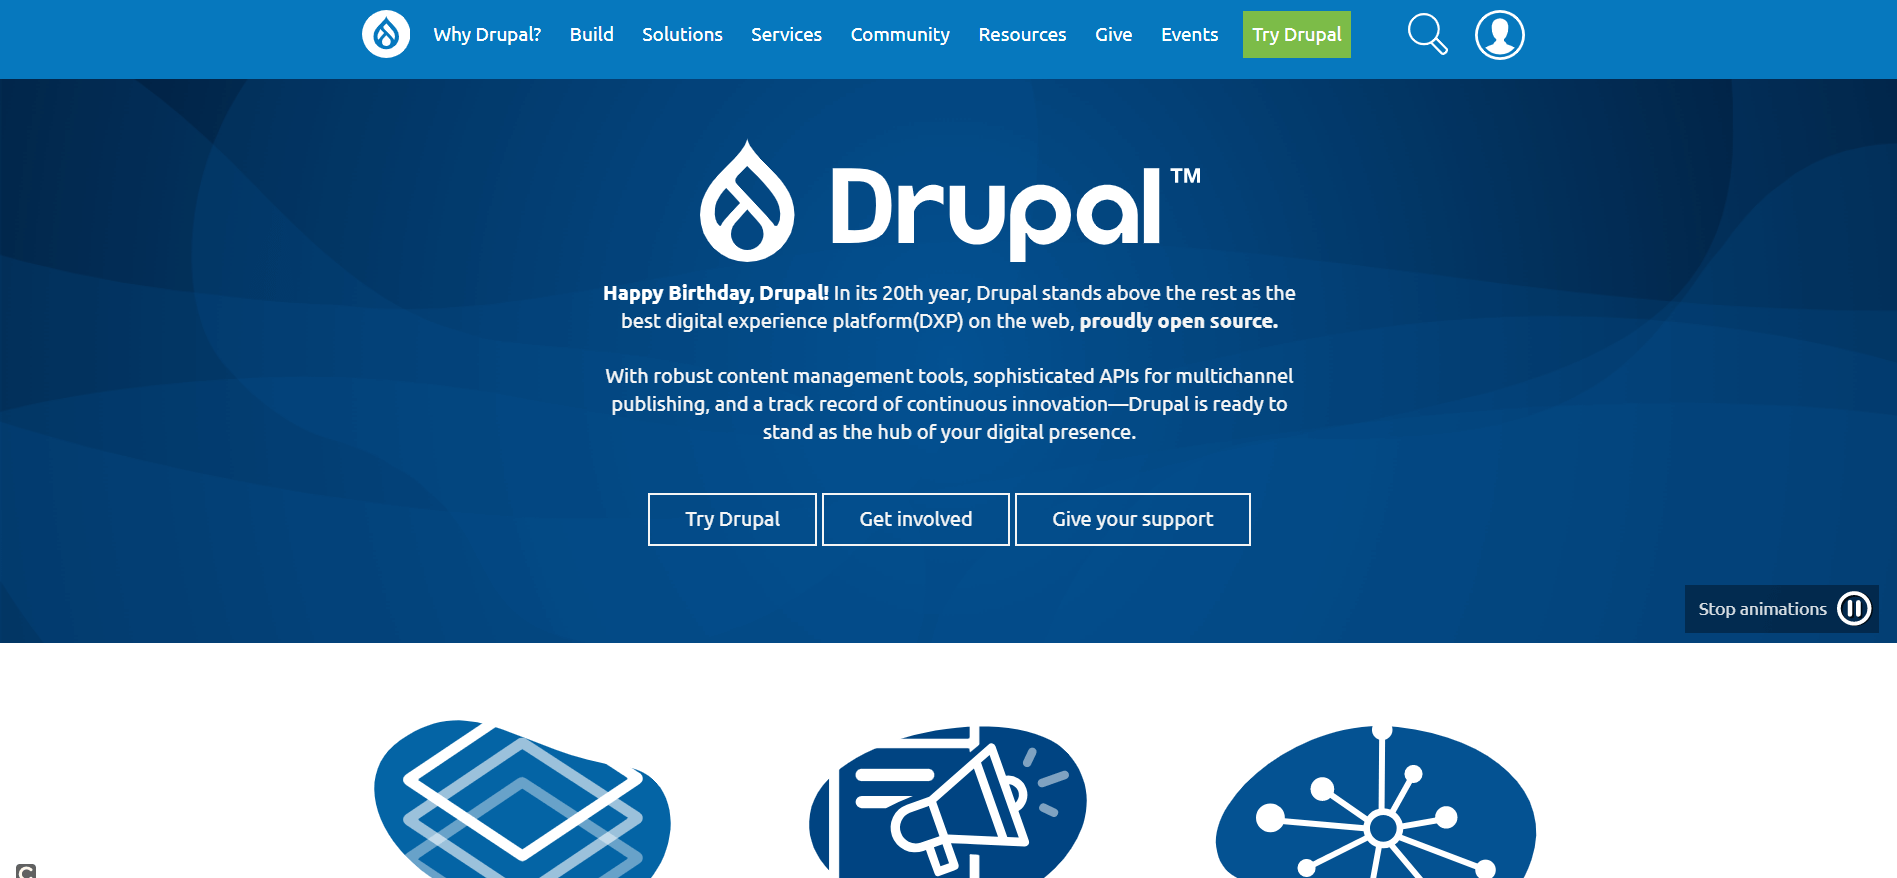 Die Startseite des Drupal-Projekts